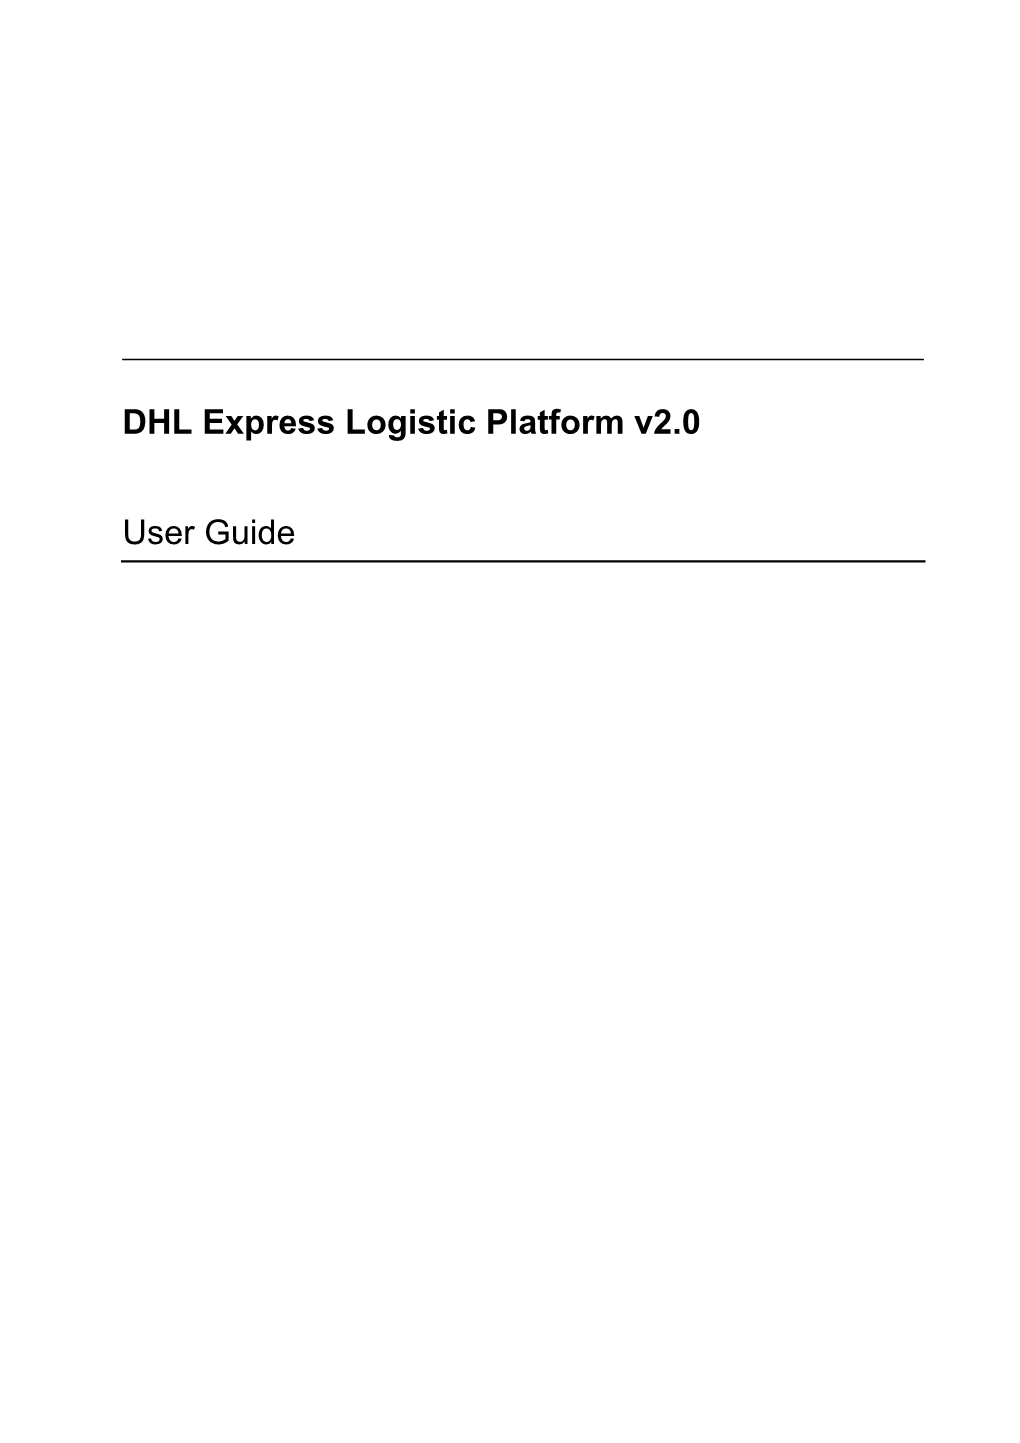 DHL Express Logistic Platform V2.0